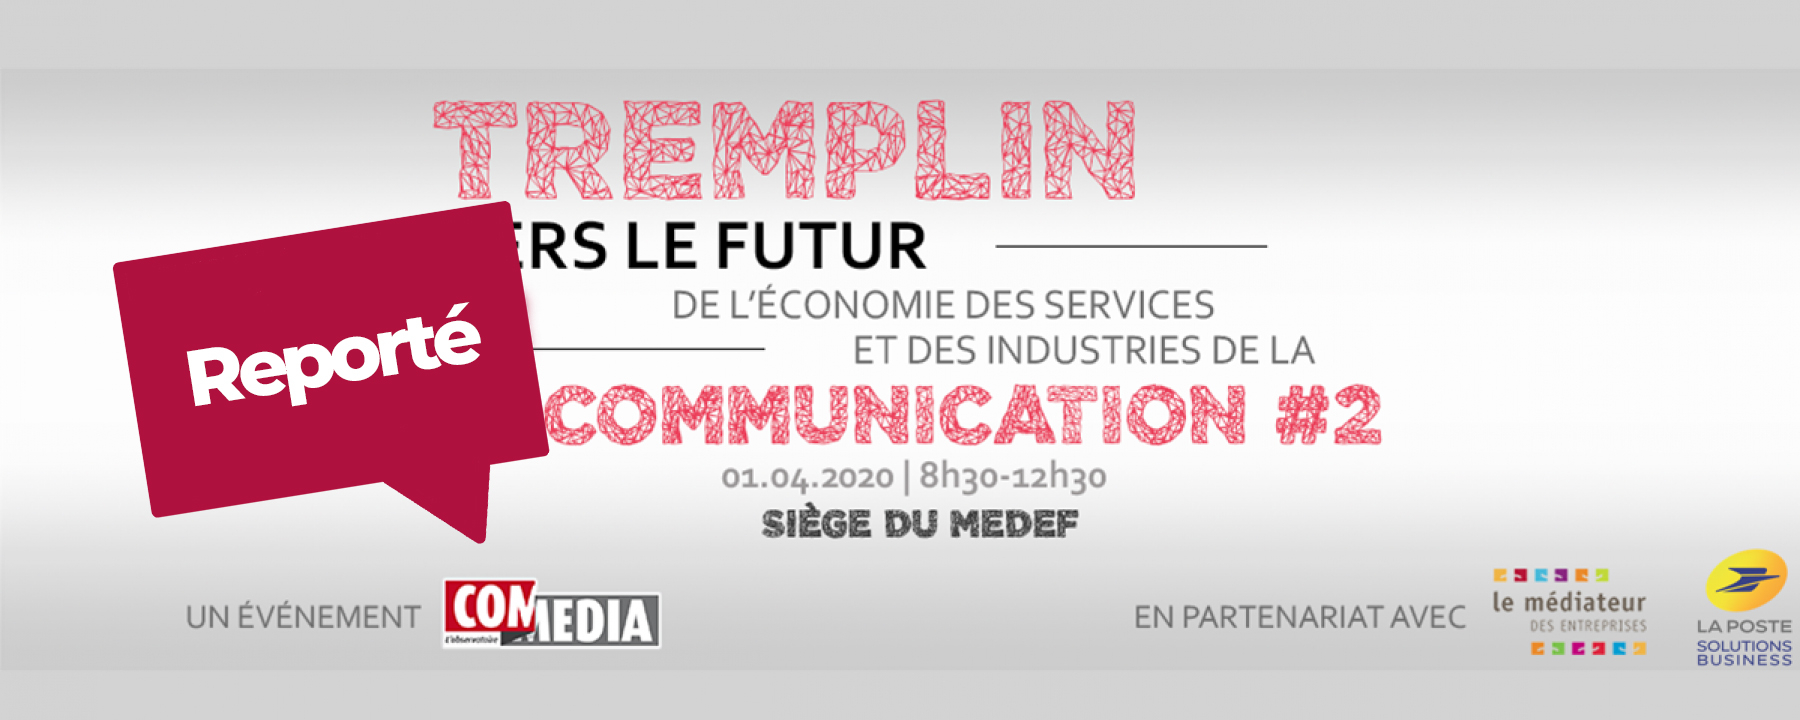 Événement Tremplin 2ème édition - Vers le Futur de l'Économie des Services et des Industries de la Communication, organisé par l'Observatoire COM MEDIA, reporté